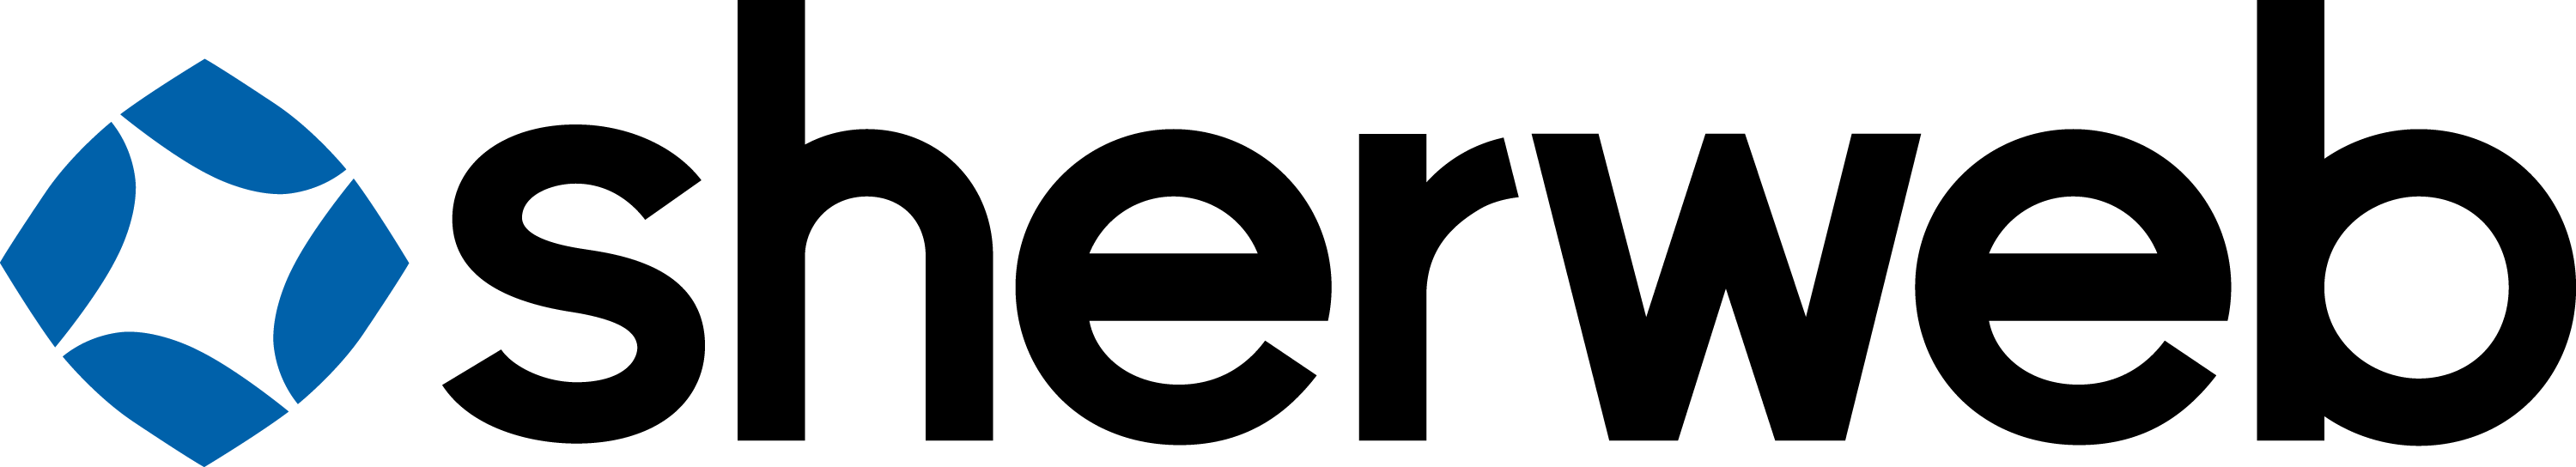 sherweb logo-1